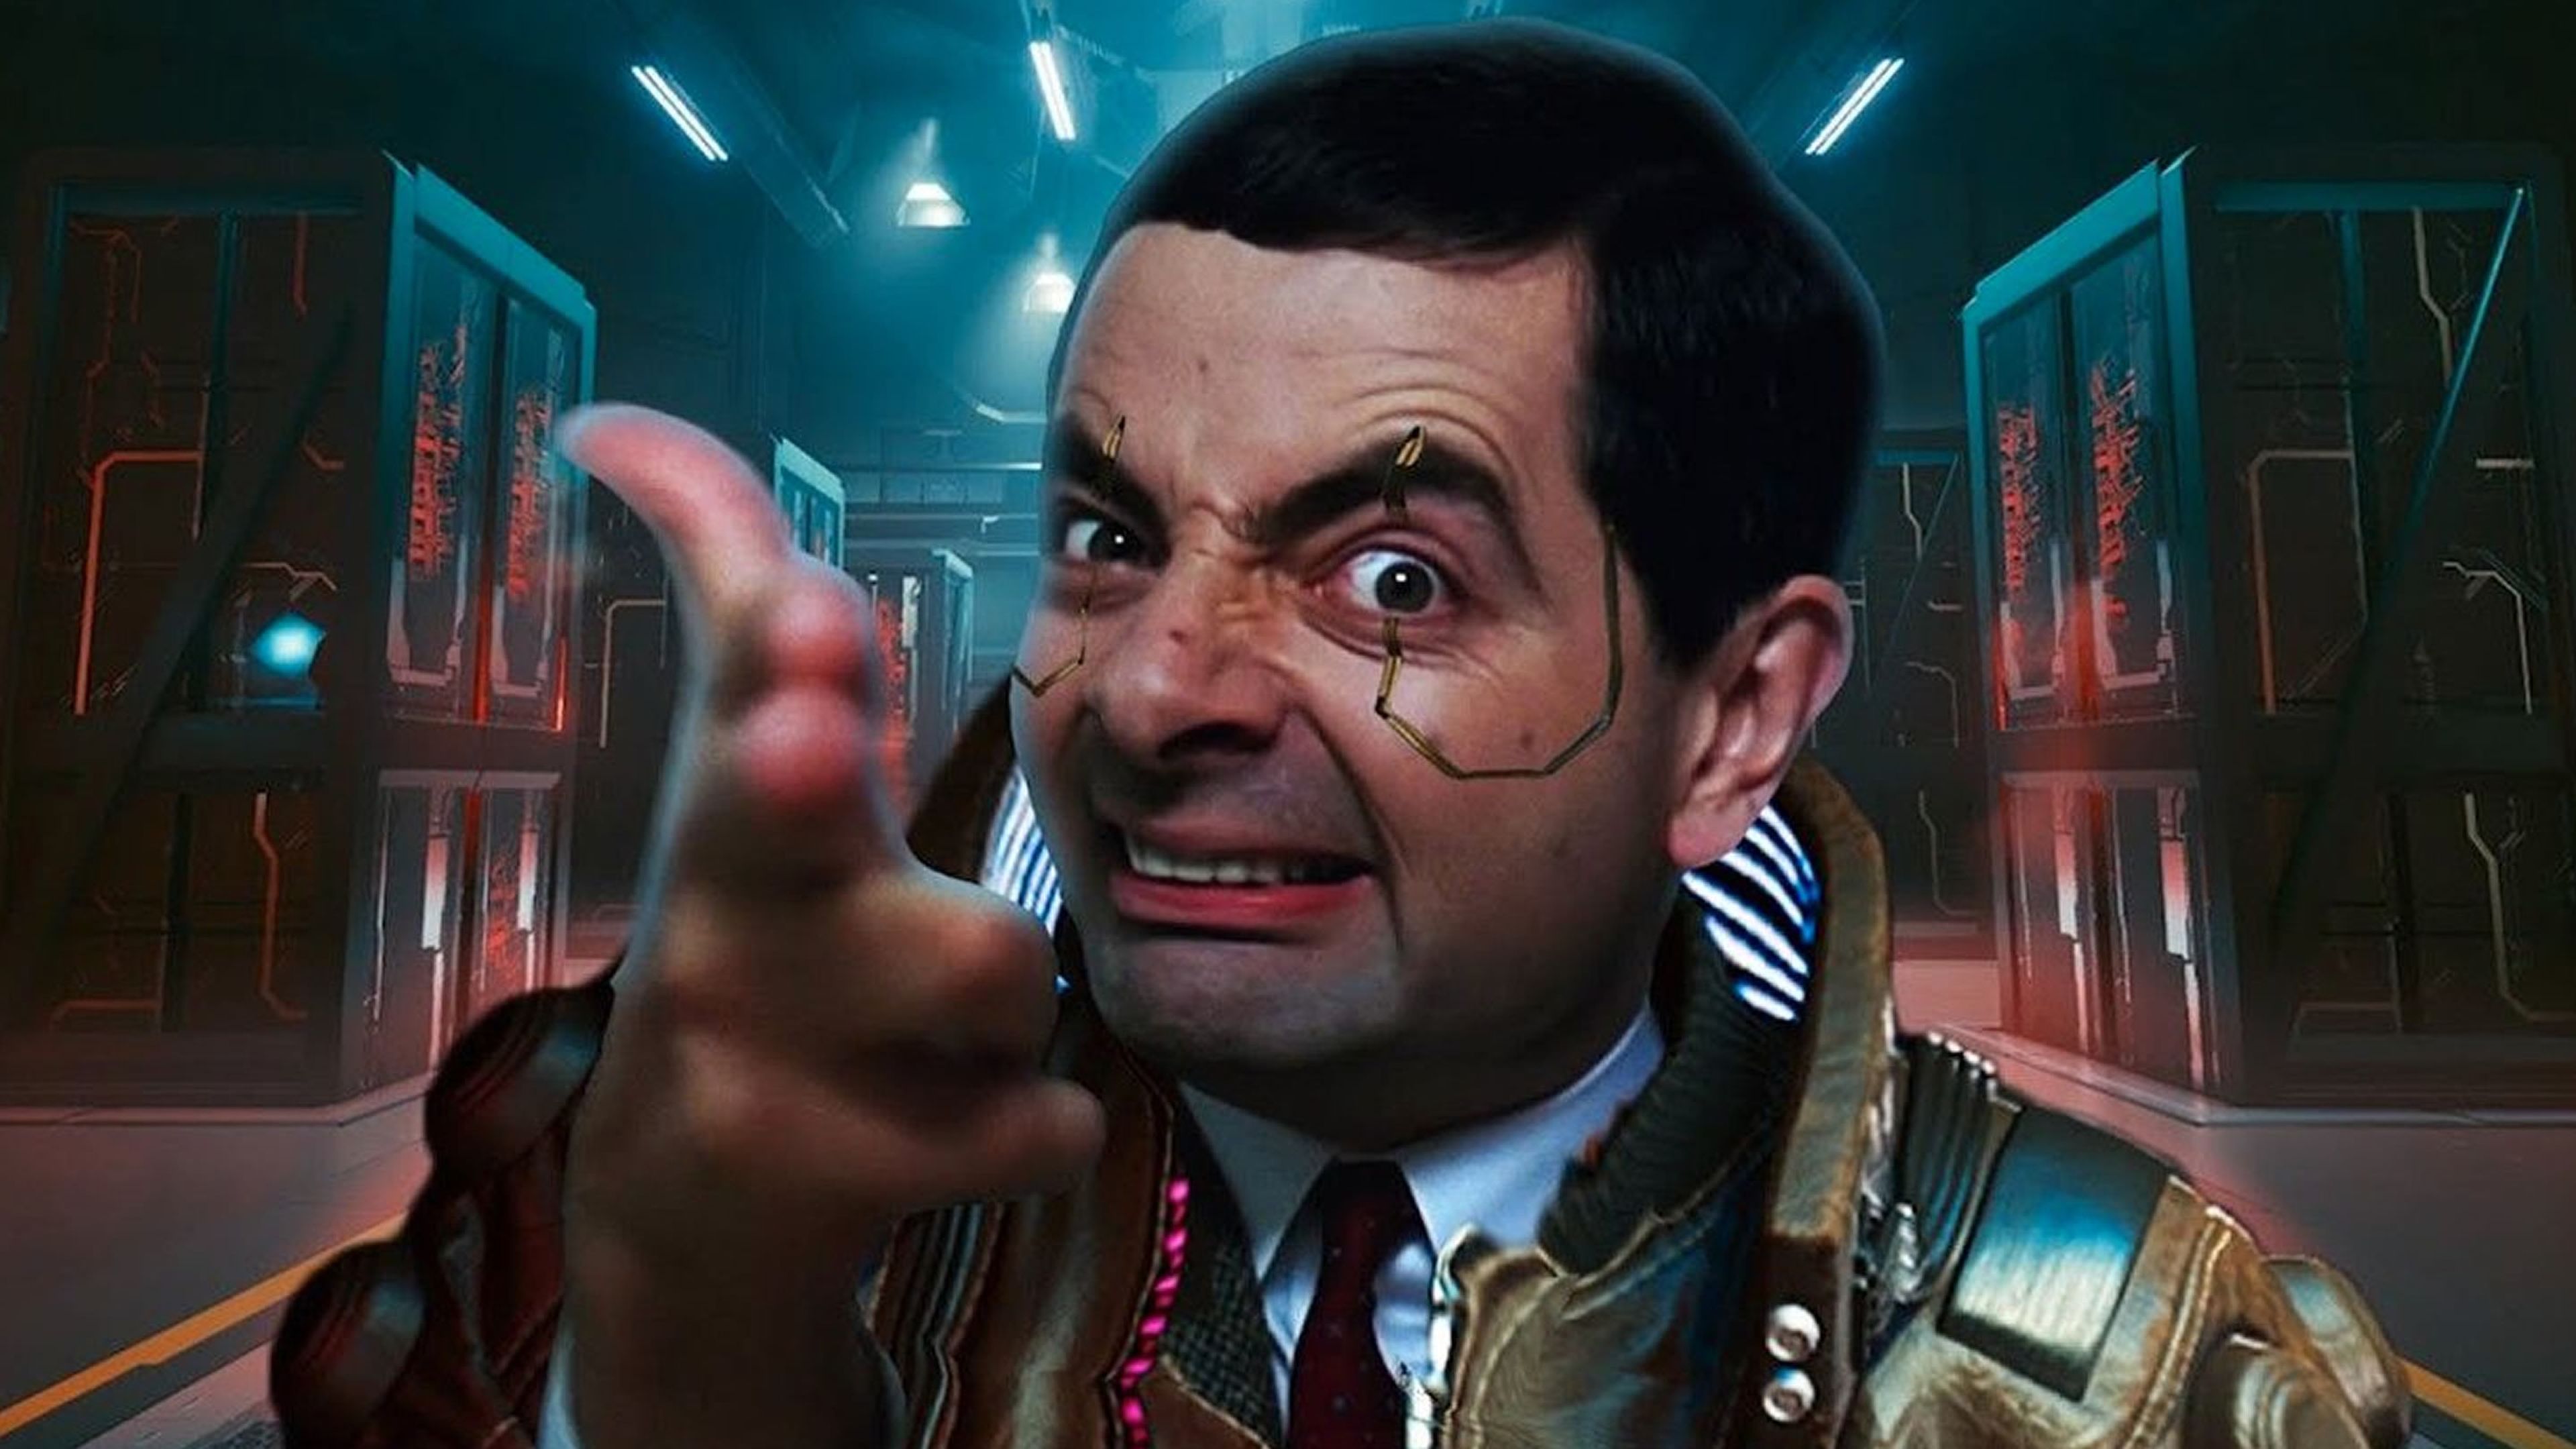 Mr. Bean - Cyberpunk 2077